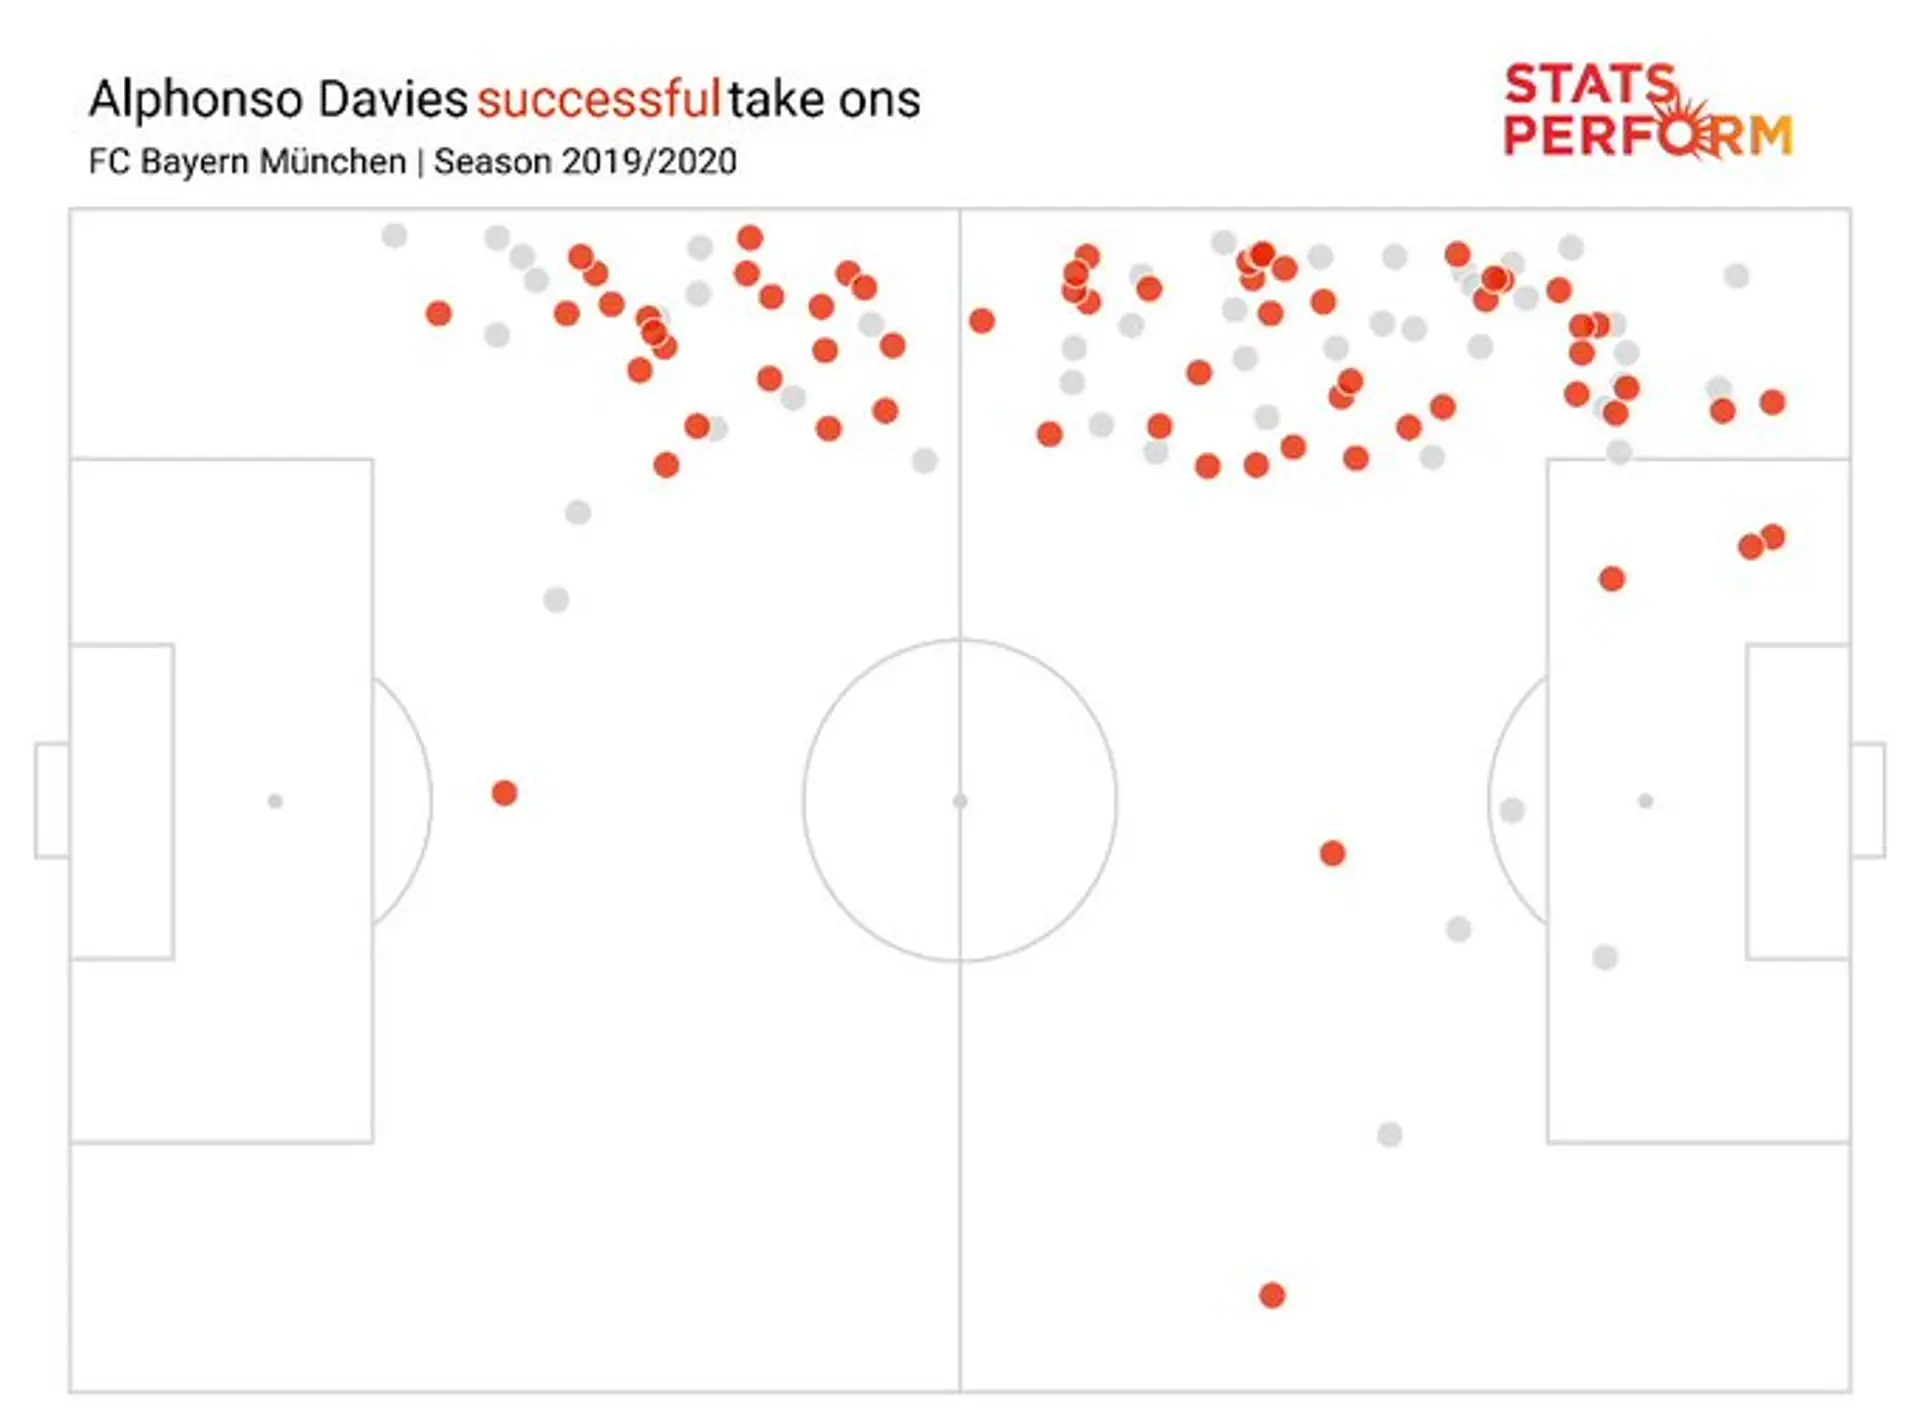 Statistik lügt nicht: Kein BL-Spieler ist in 1vs1-Situationen genauso stark wie Davies